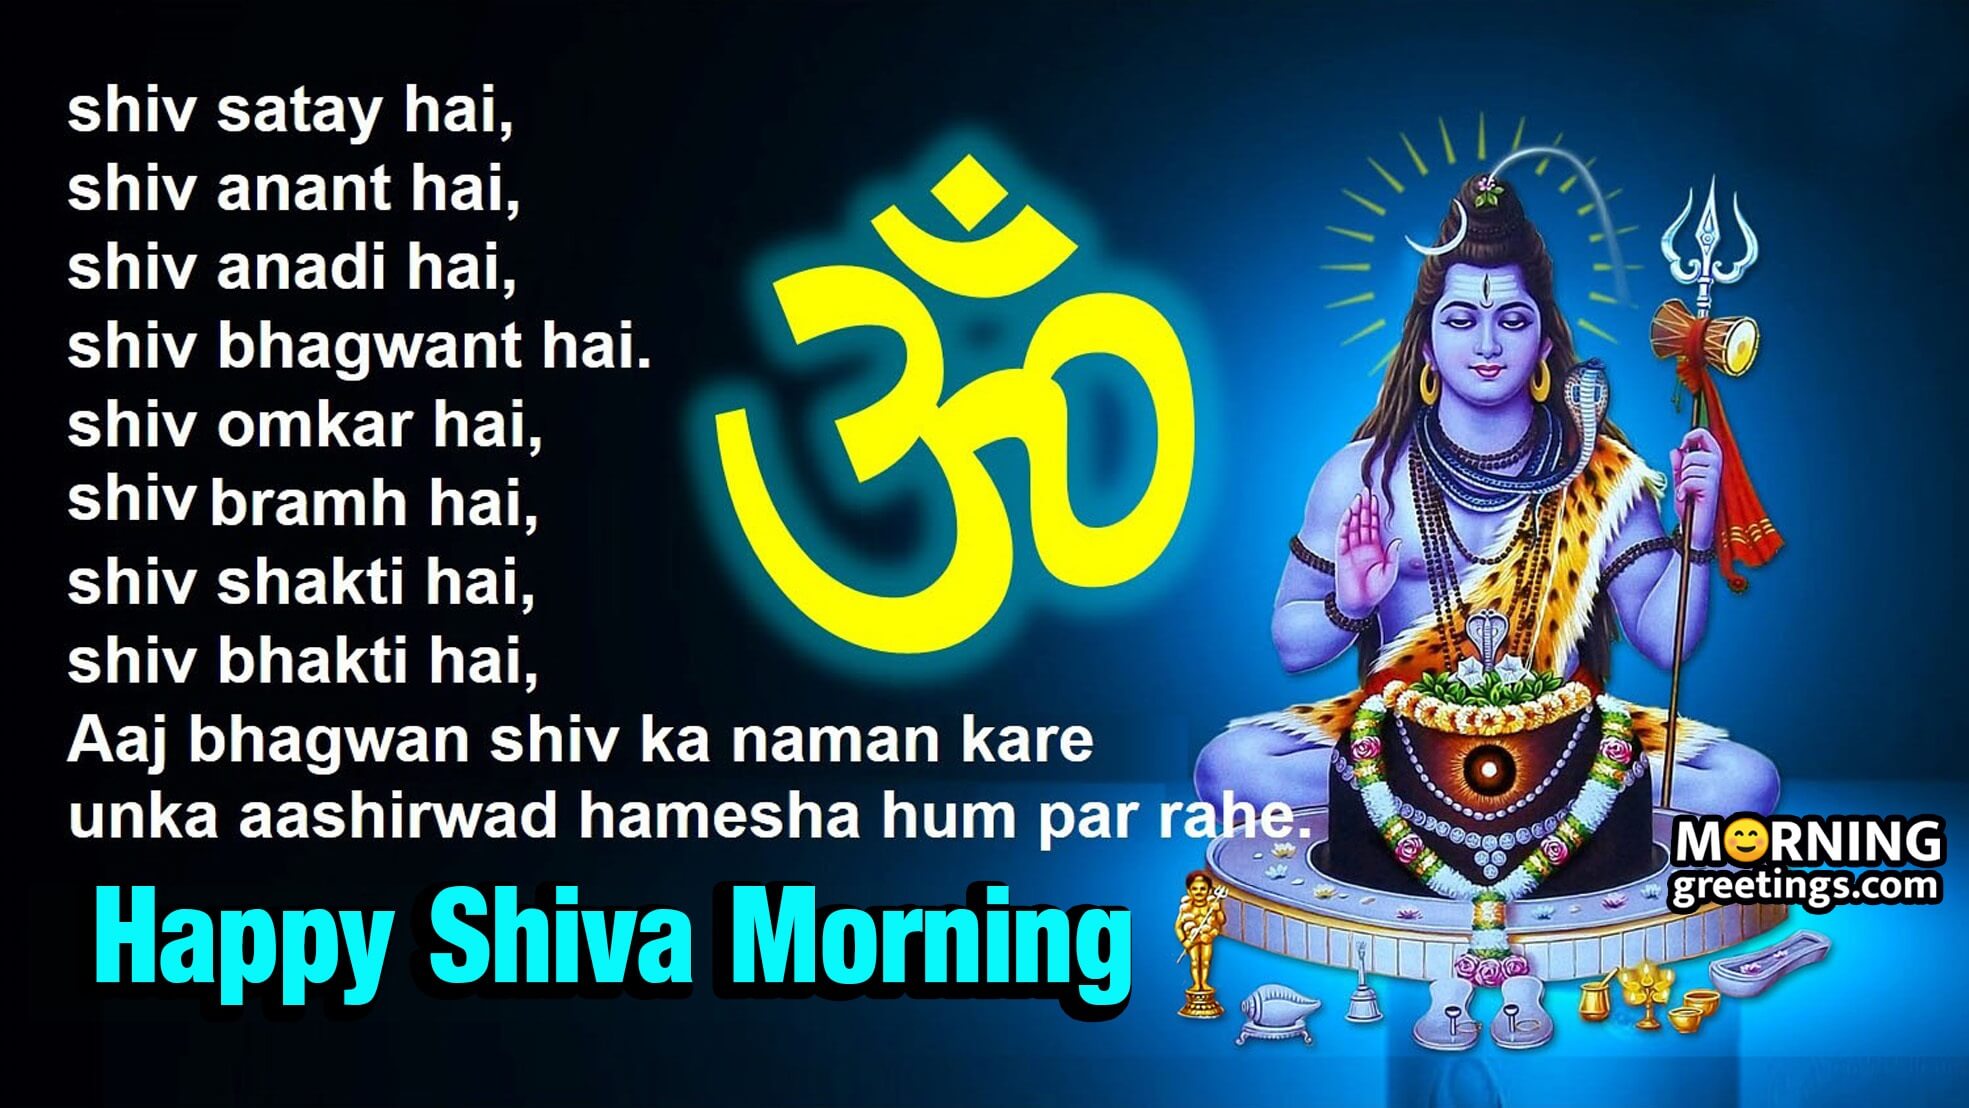 Happy Shiva Morning